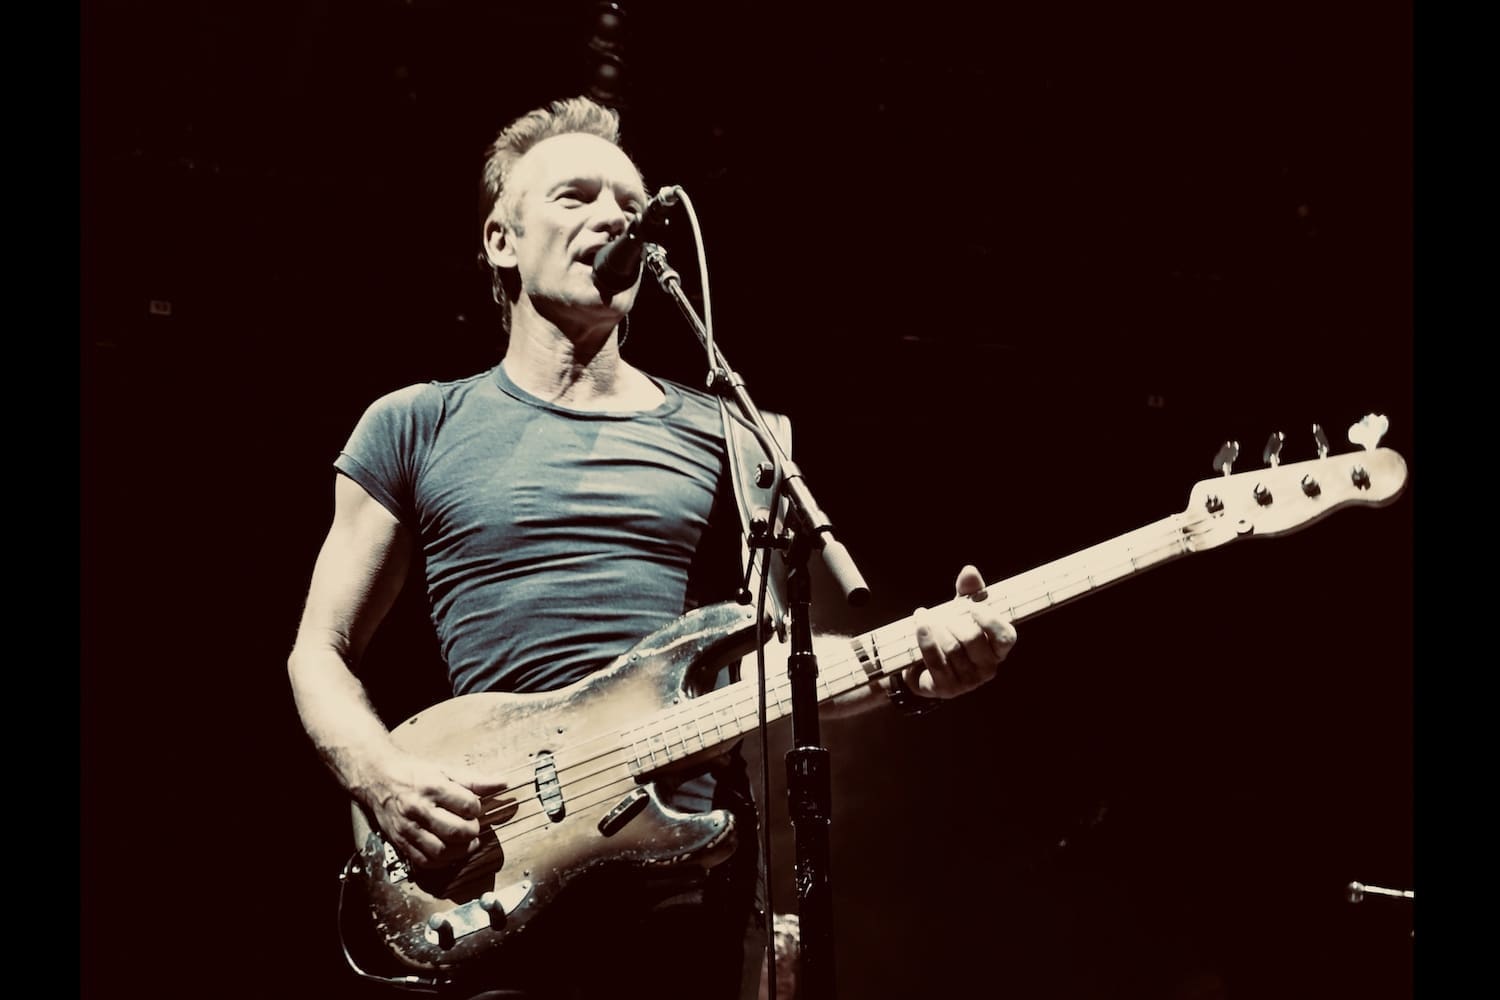 Der Musiker Sting mit Bassgitarre und Mikrofon auf einer Konzertbühne.